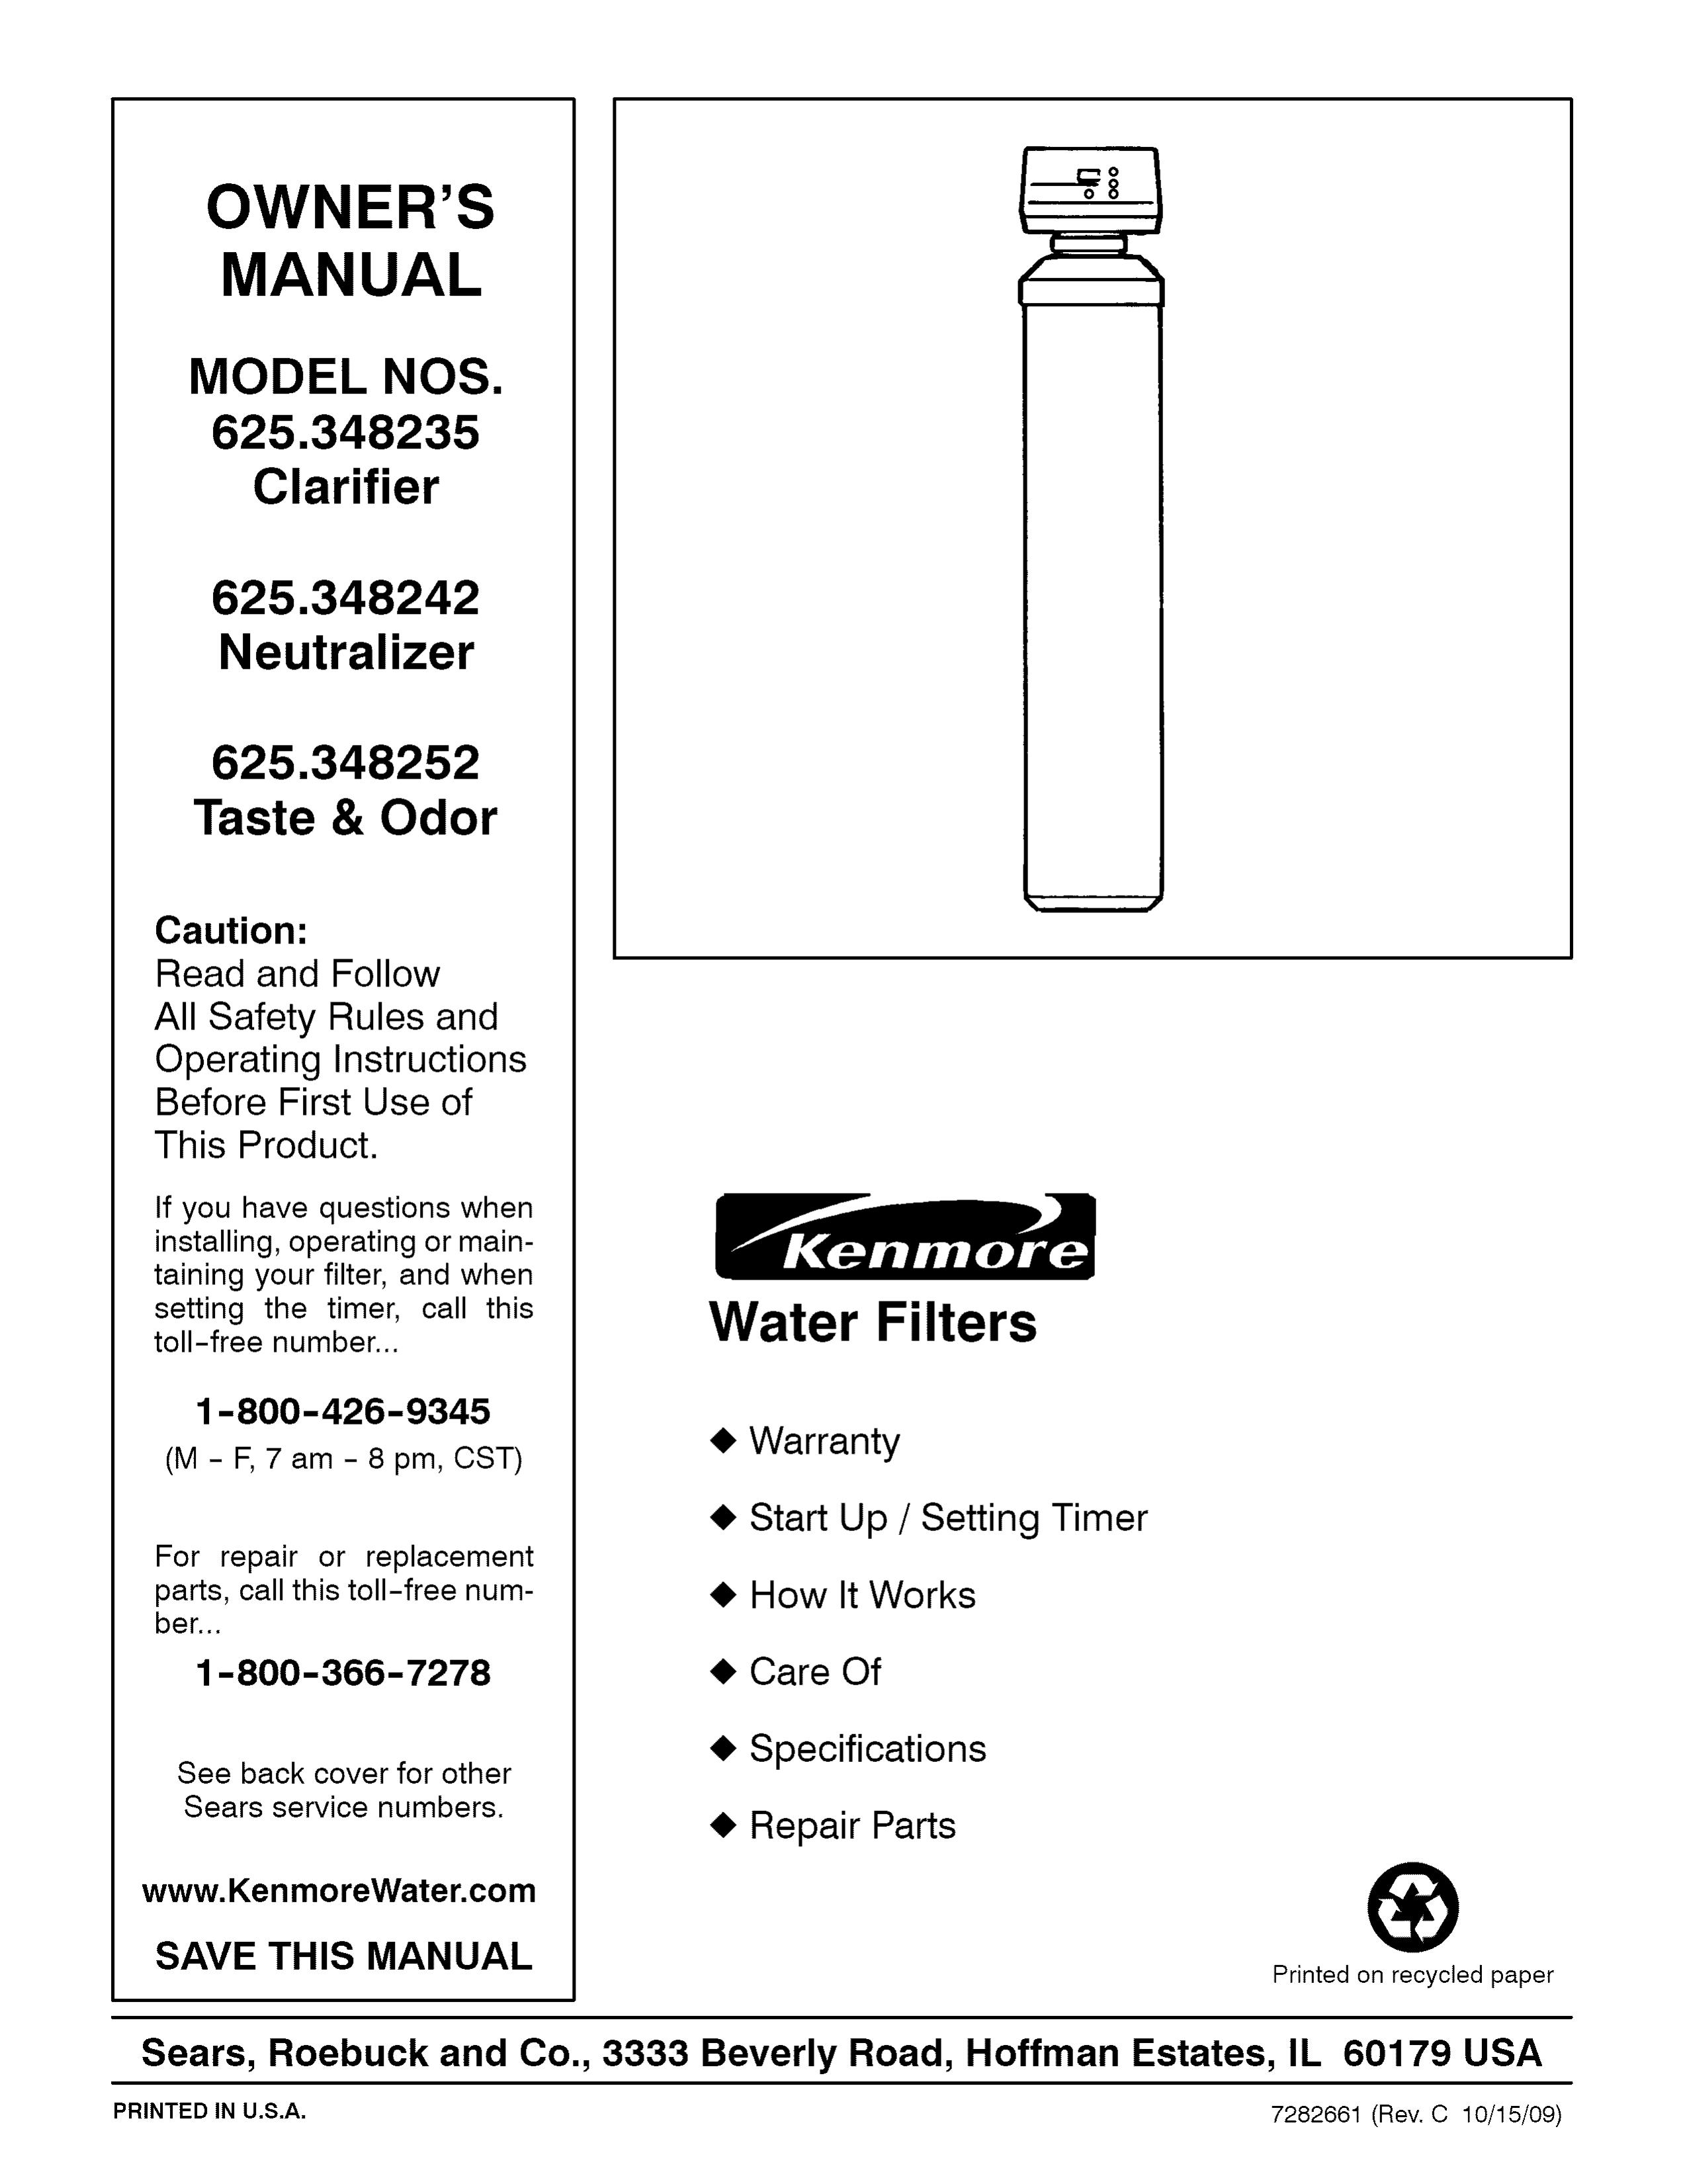 Kenmore 625.348252 Water Dispenser User Manual